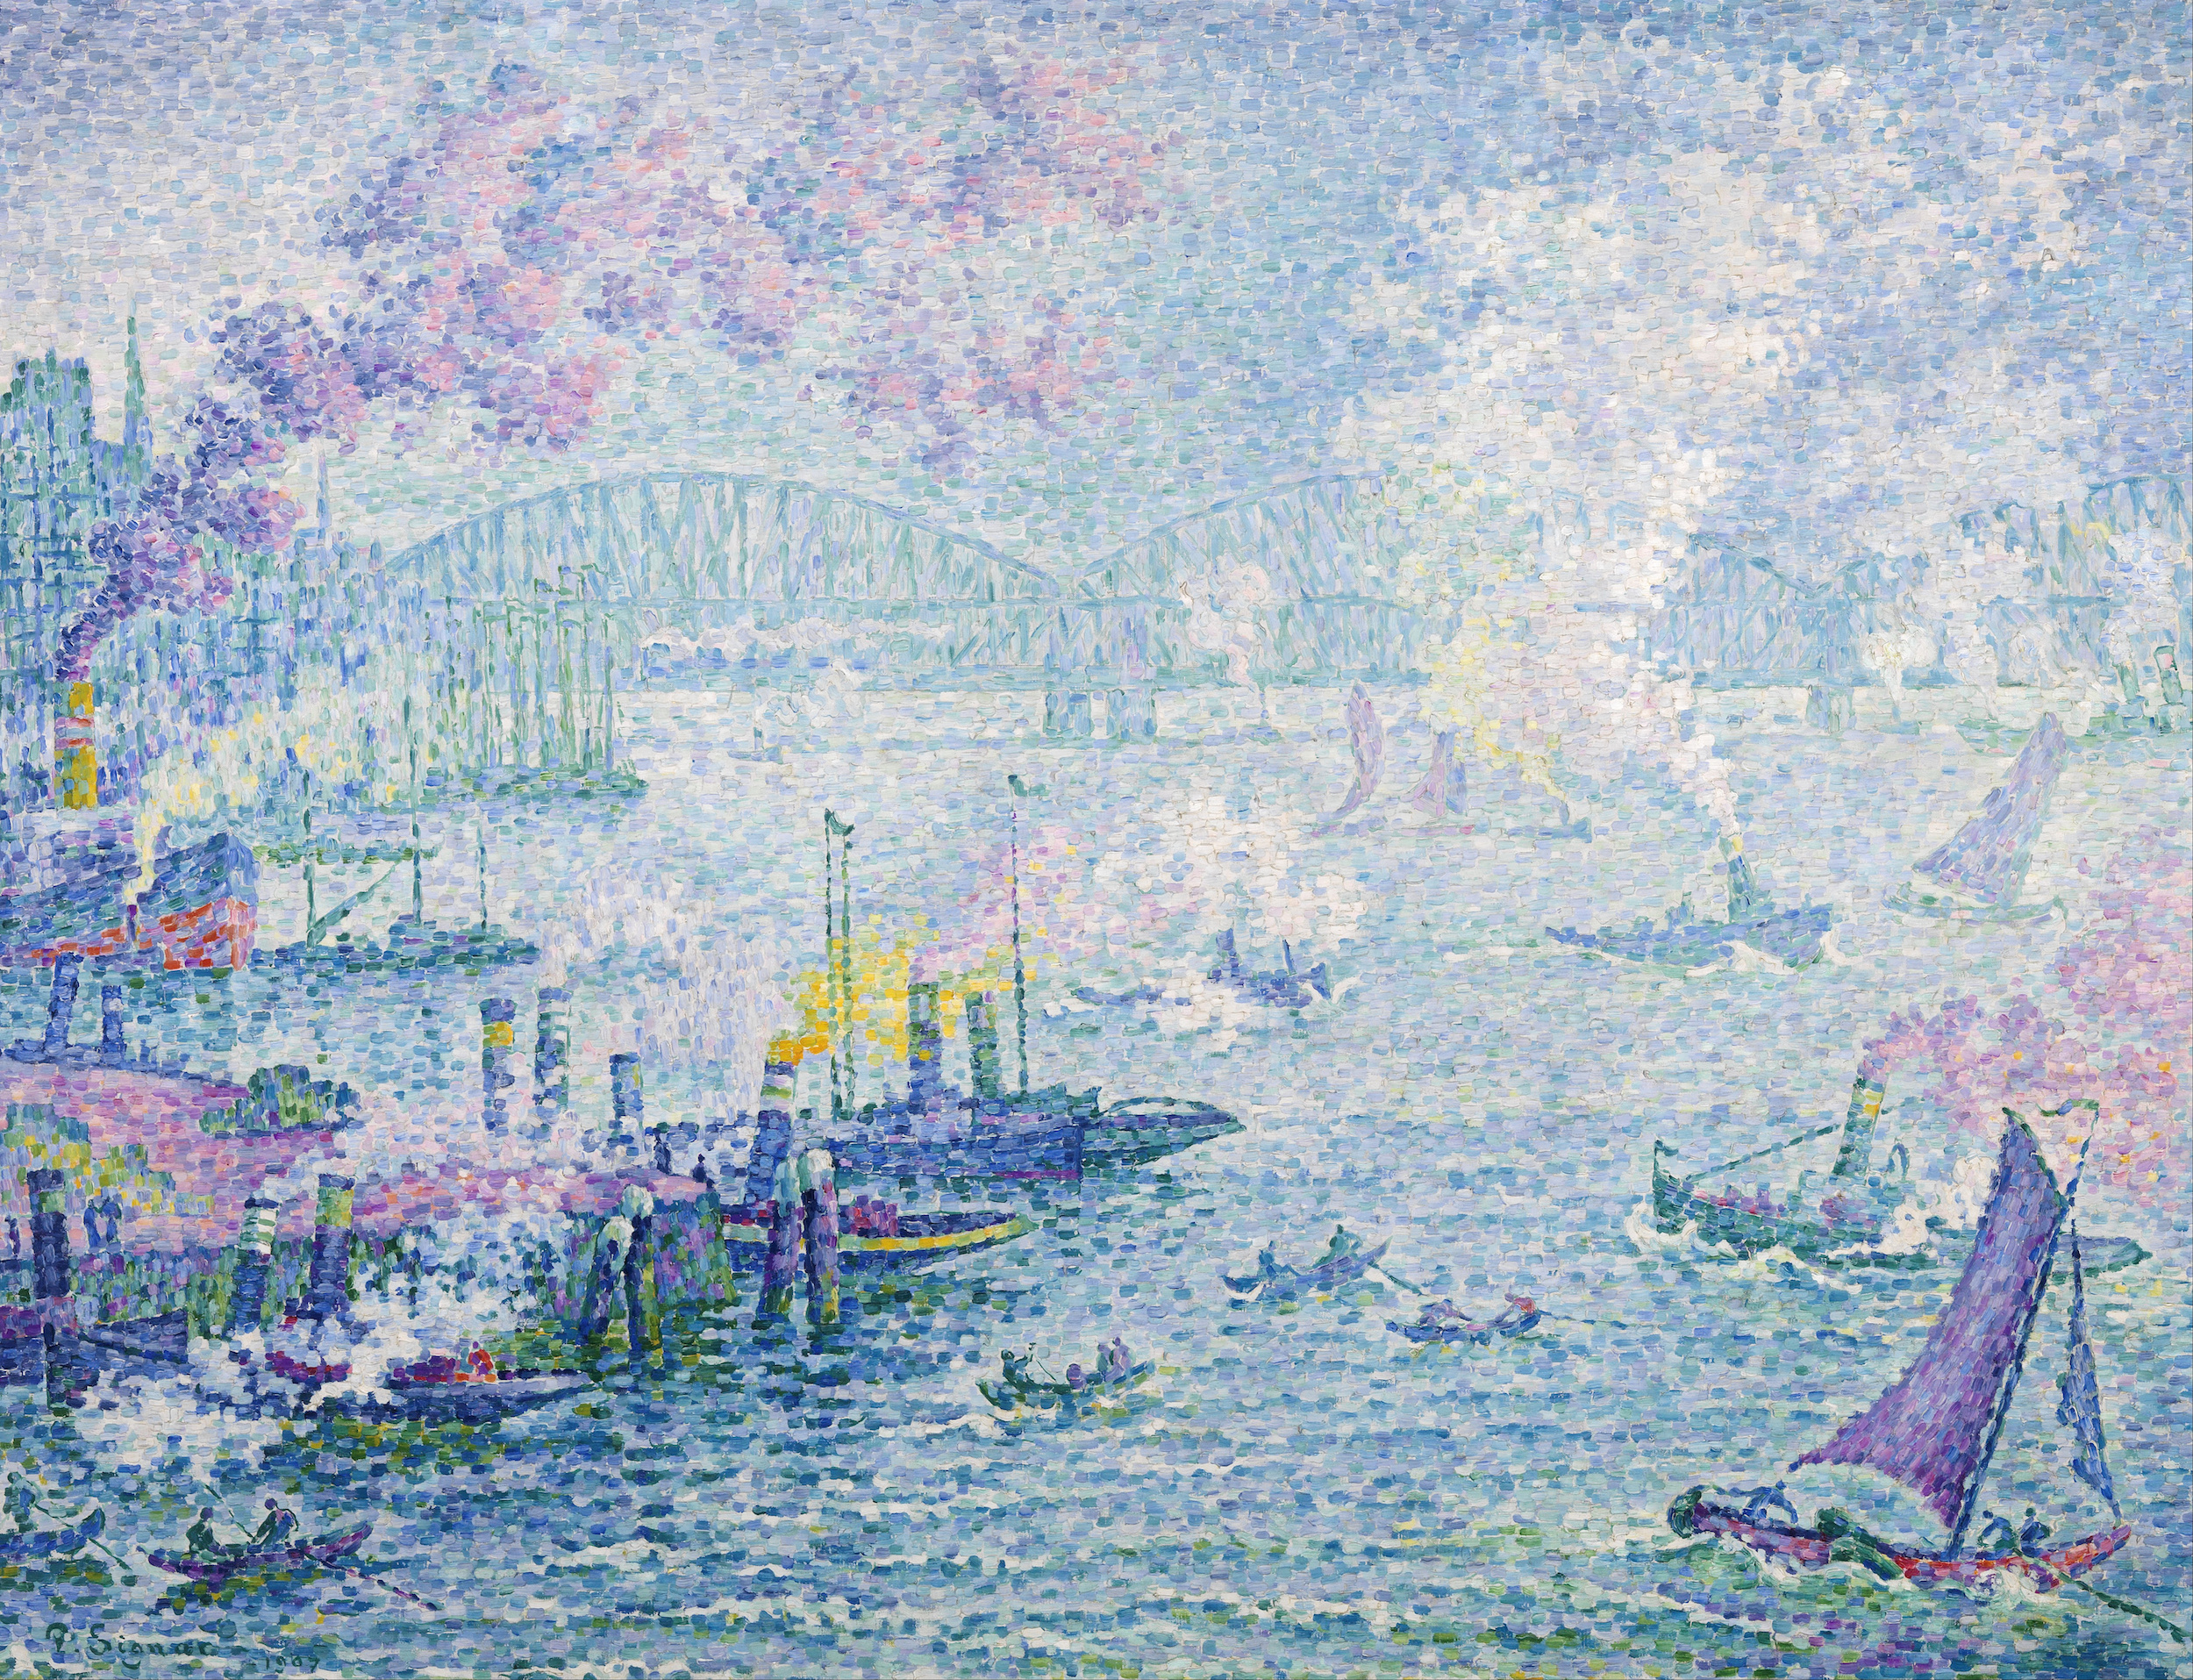 鹿特丹港 by Paul Signac - 1907 - 114 x 87 cm 